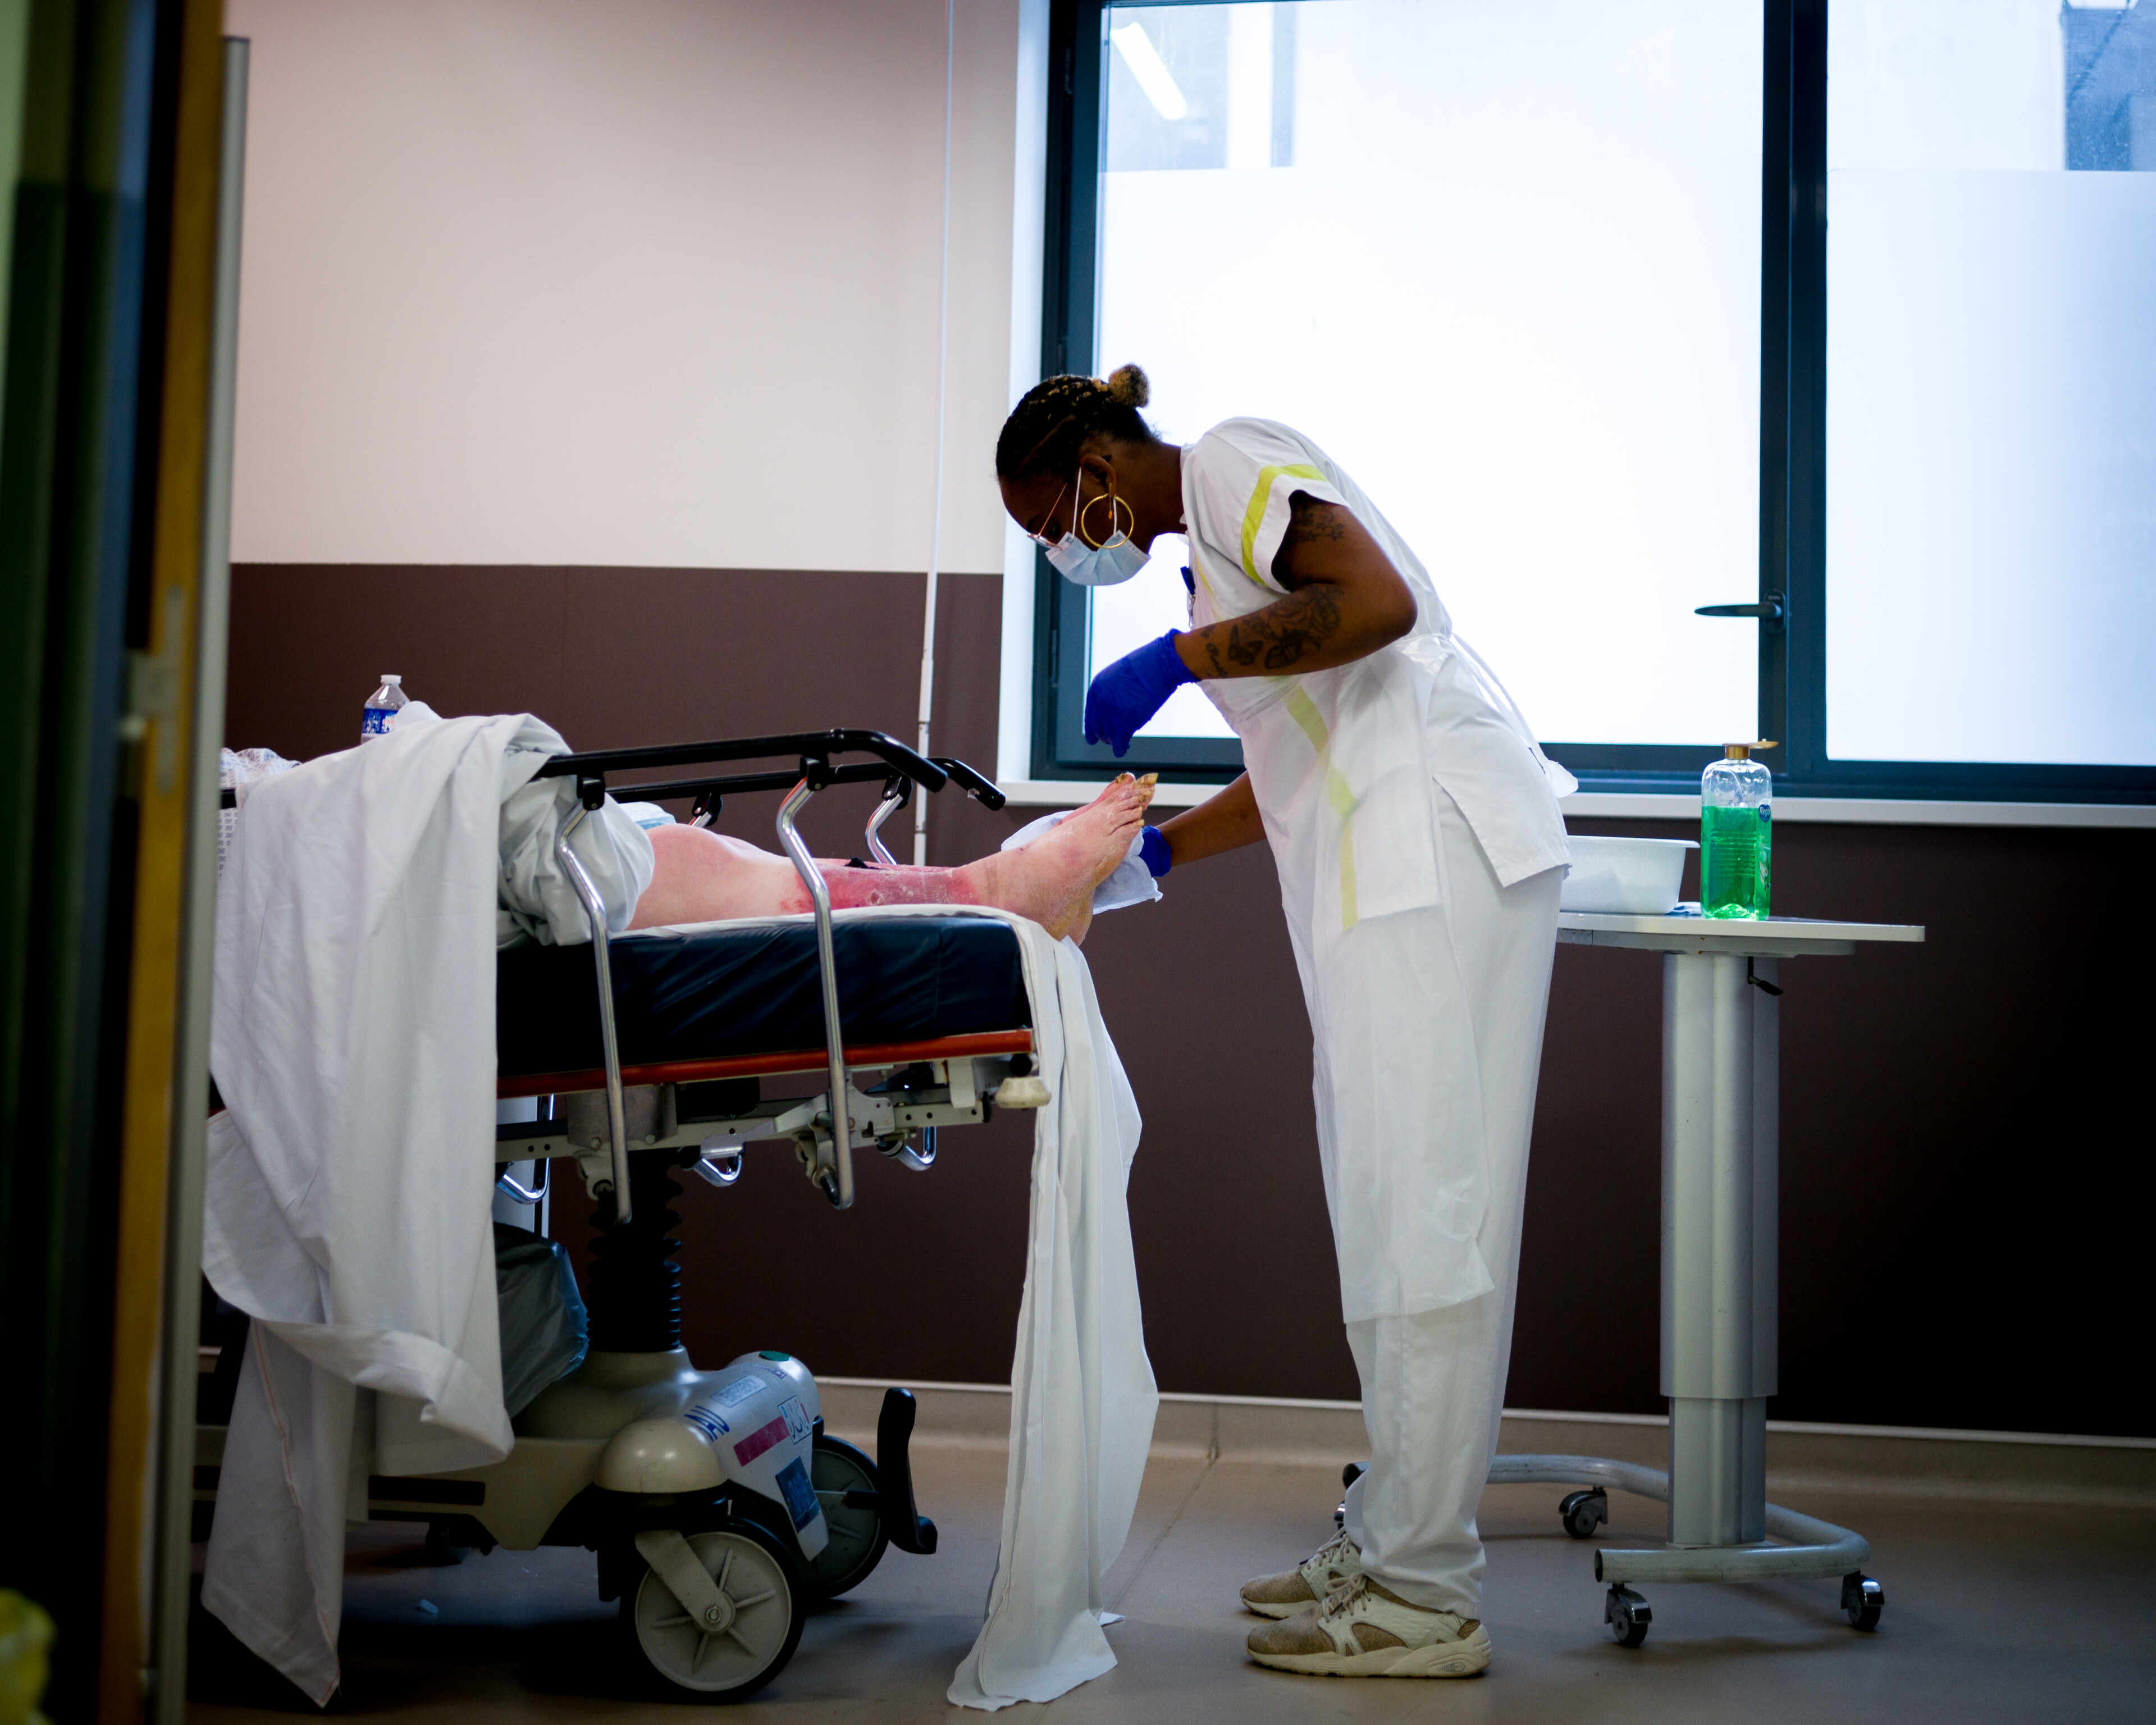 Une aide-soignante examine les pieds d’un patient, aux urgences de l’hôpital de la Source, à Orléans, le 15 juin 2022.